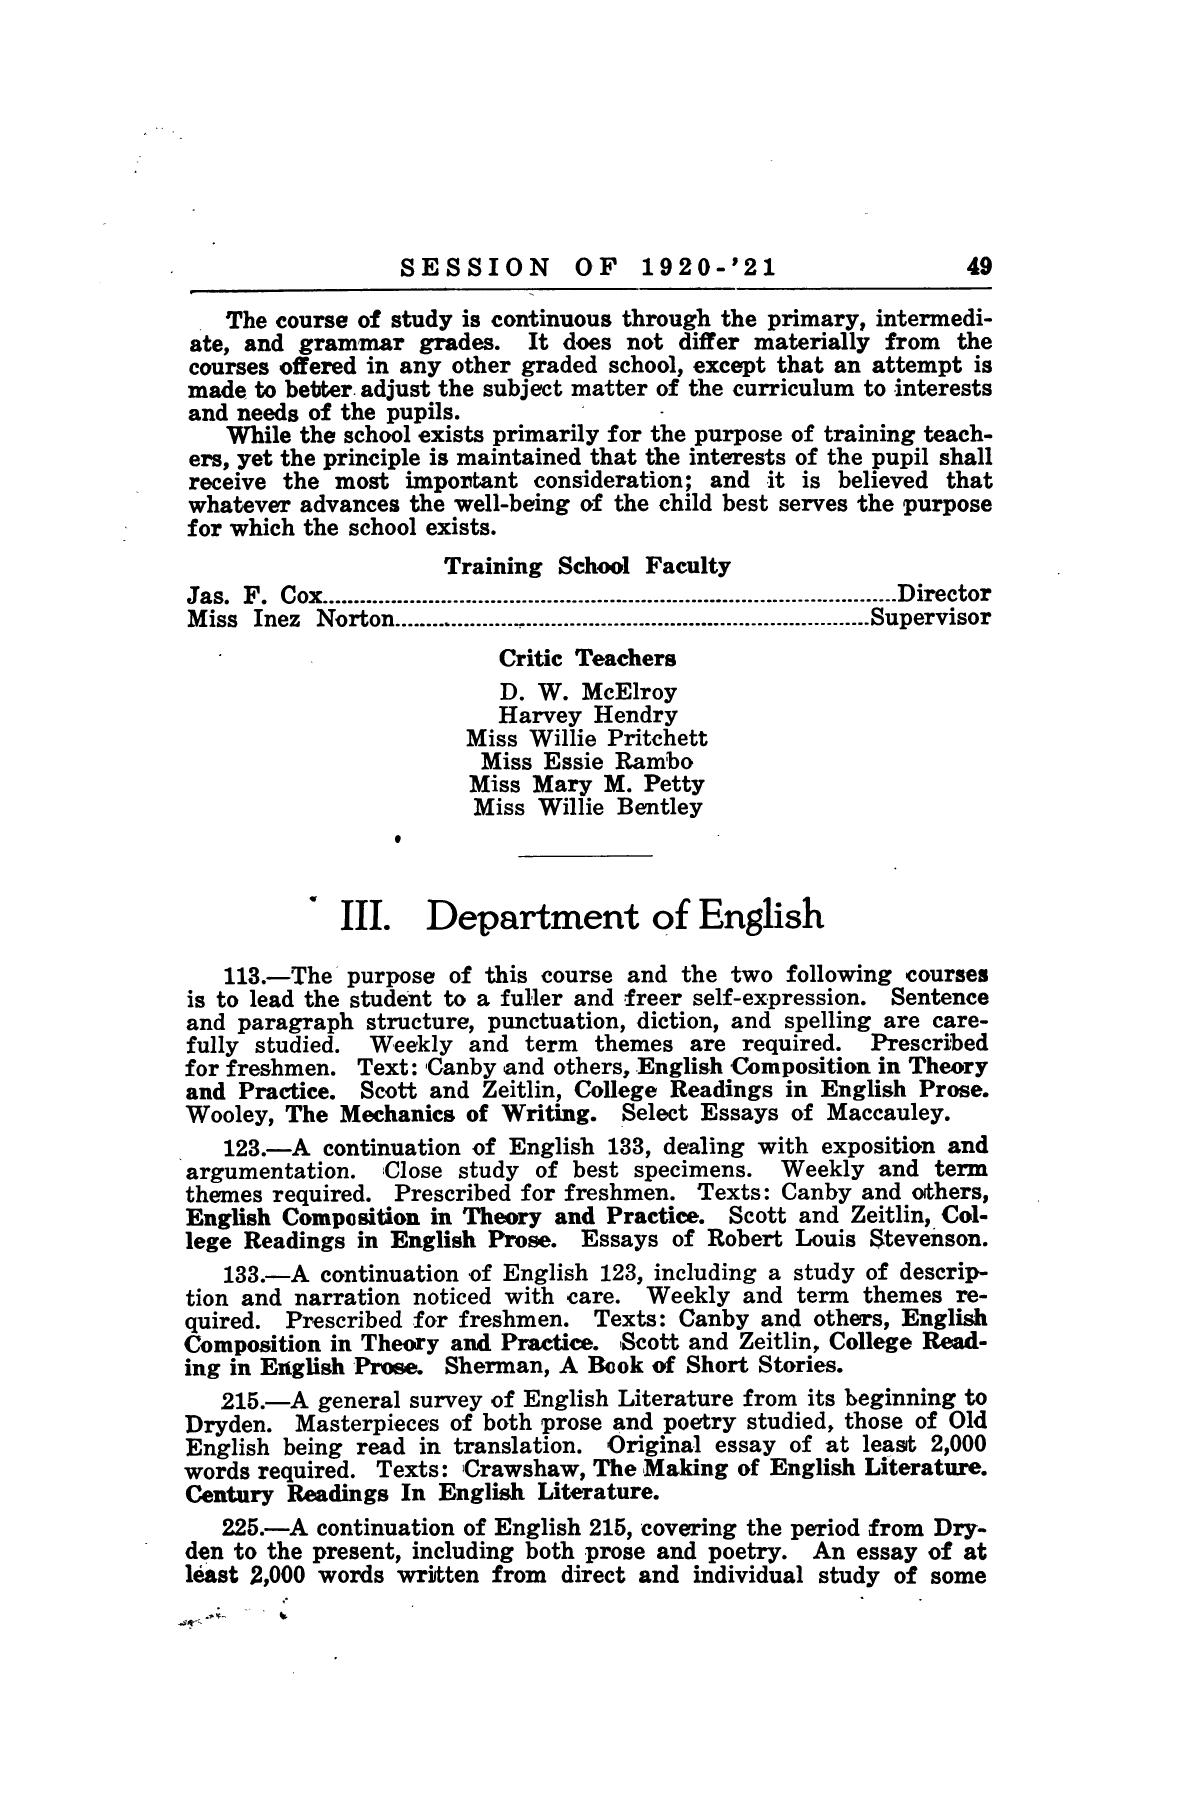 Catalog of Abilene Christian College, 1920-1921
                                                
                                                    49
                                                